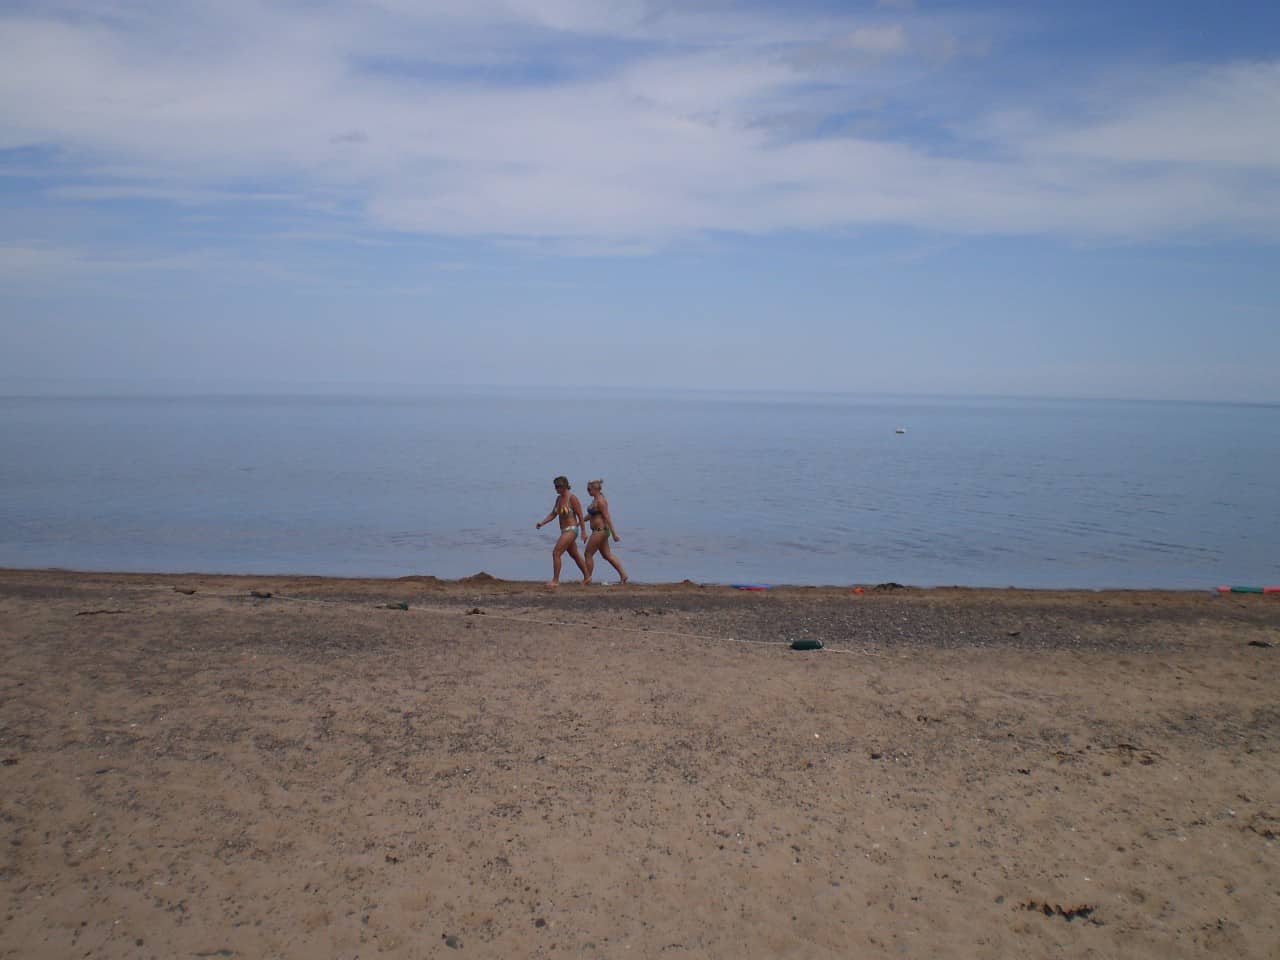 Melmerby Beach Walk - People walking the 2 km long Melmerby Beach on Little Harbour in Nova Scotia, Canada. 